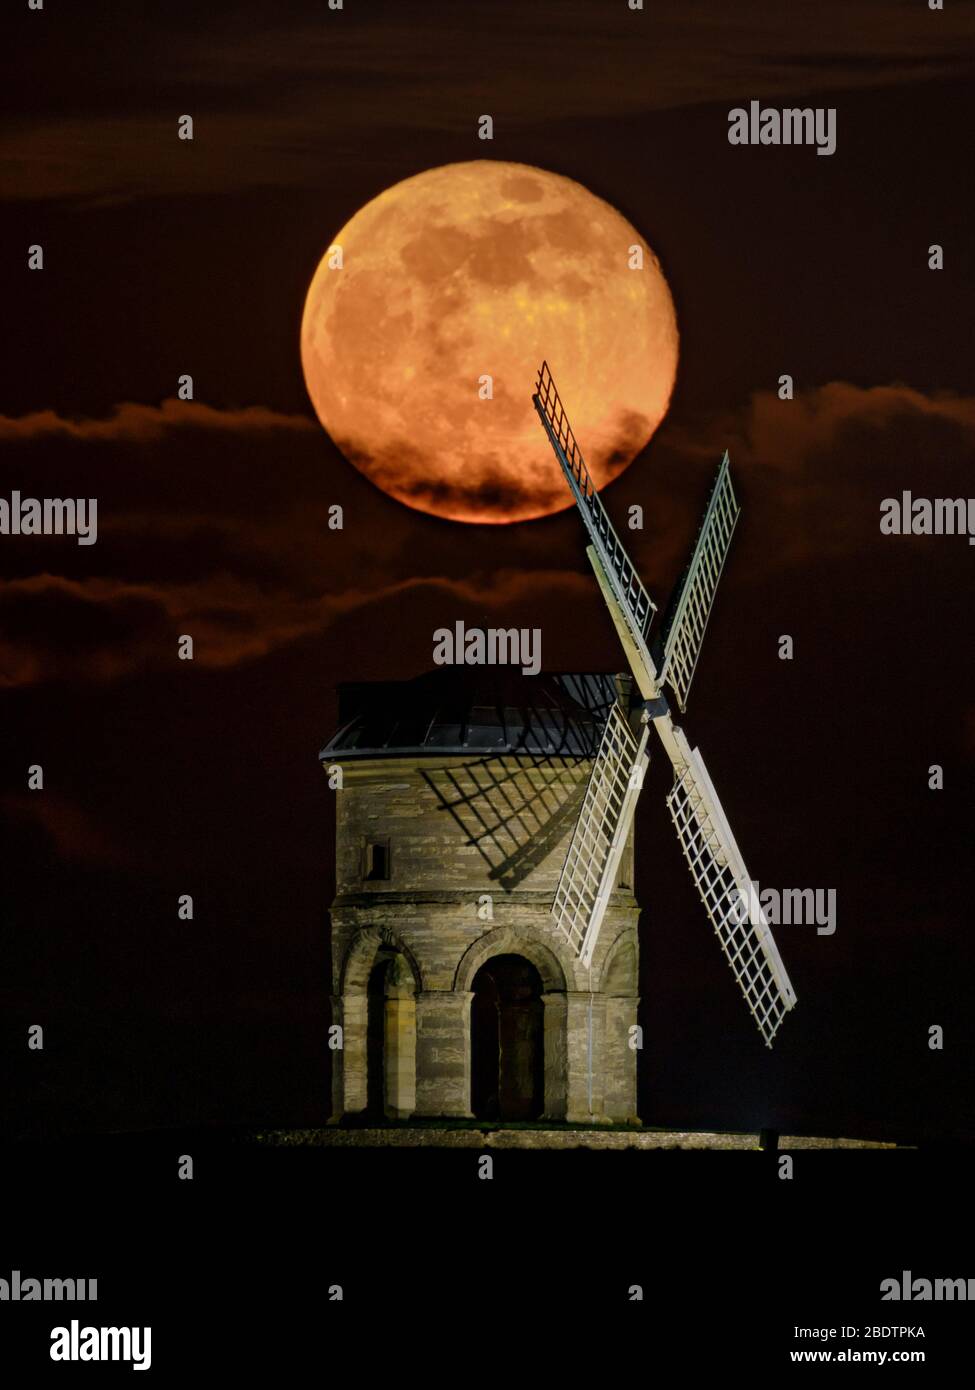 Luna piena (superluna) che sorge dietro il mulino a vento di Chesterton, Warwickshire, Regno Unito. Immagine singola (non composita) acquisita con obiettivo a lunghezza focale lunga. Foto Stock